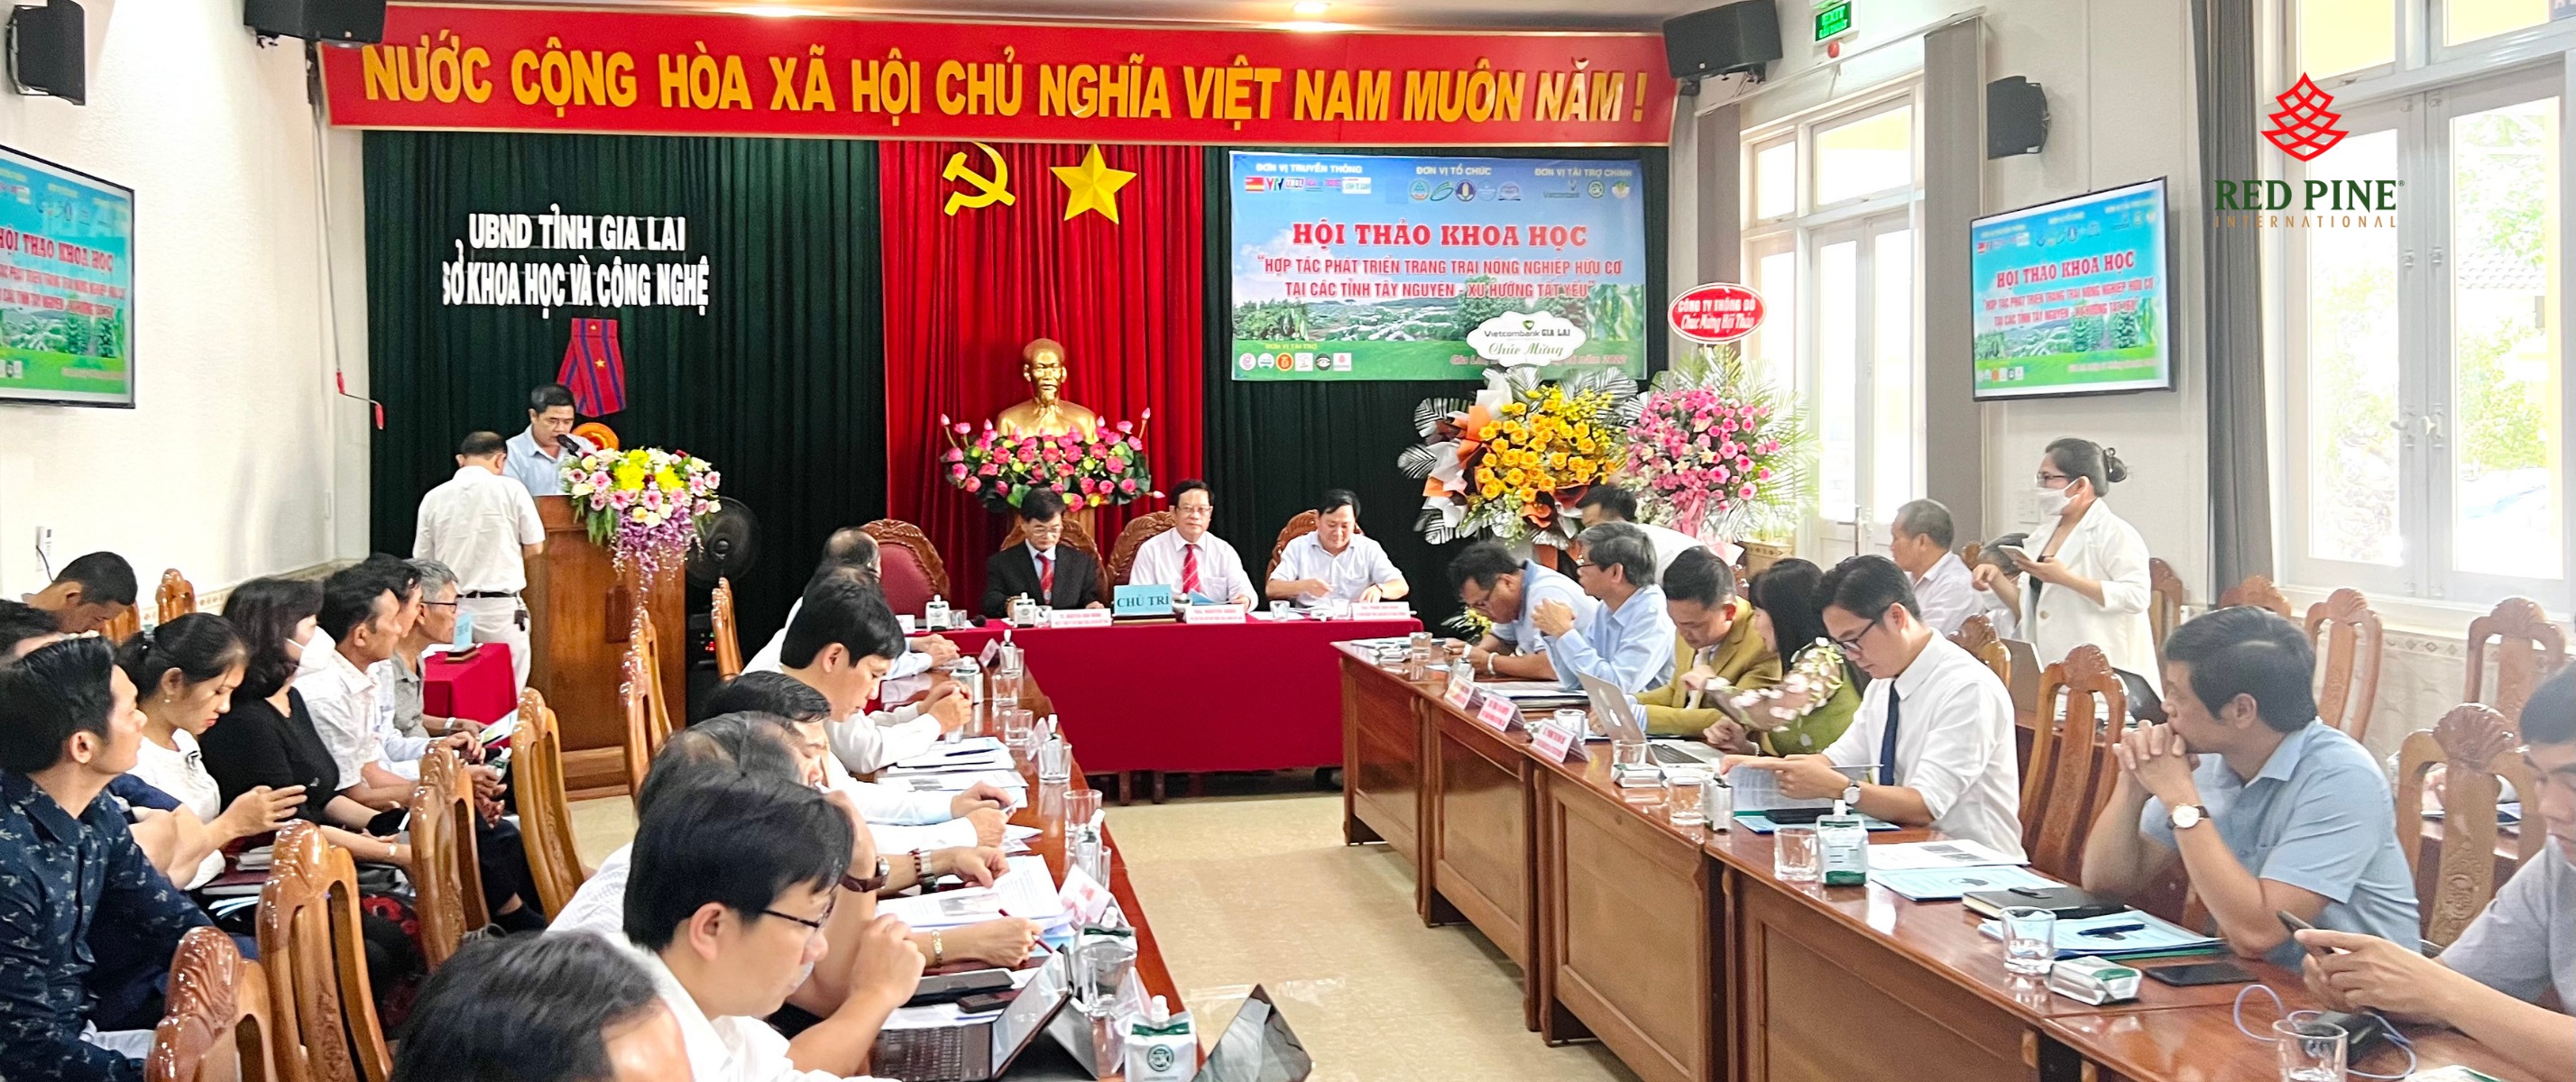 Hội thảo khoa học phát triển trang trại nông nghiệp hữu cơ các tỉnh Tây Nguyên